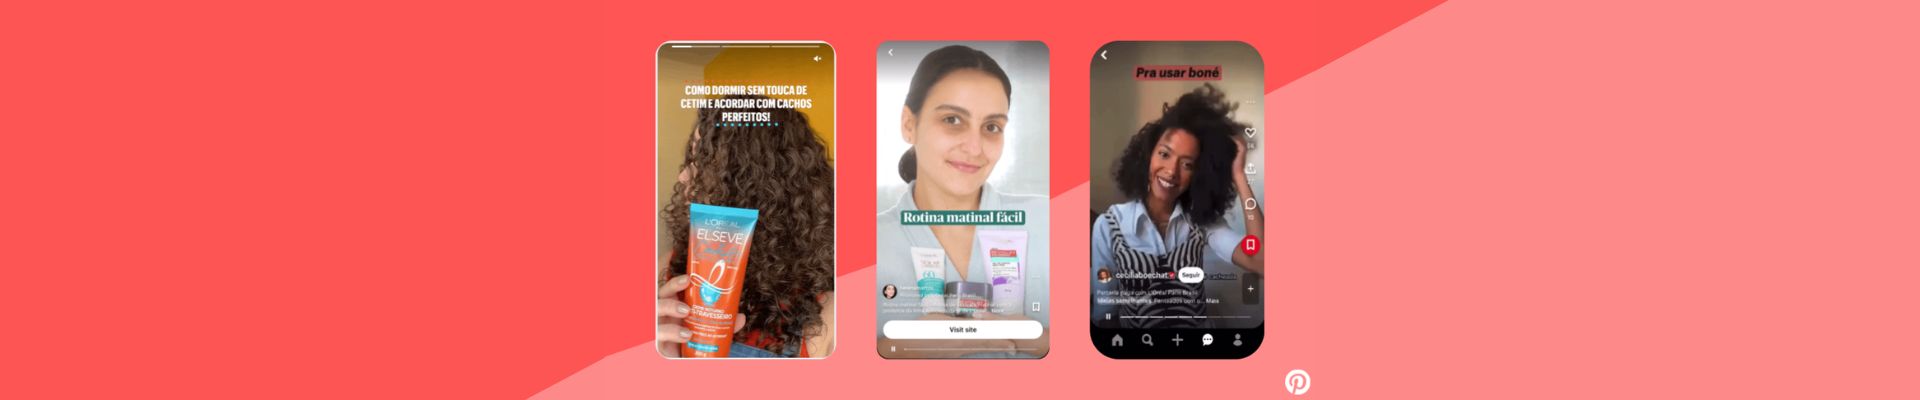 Pinterest e L’Oréal Paris lançam campanha em parceria